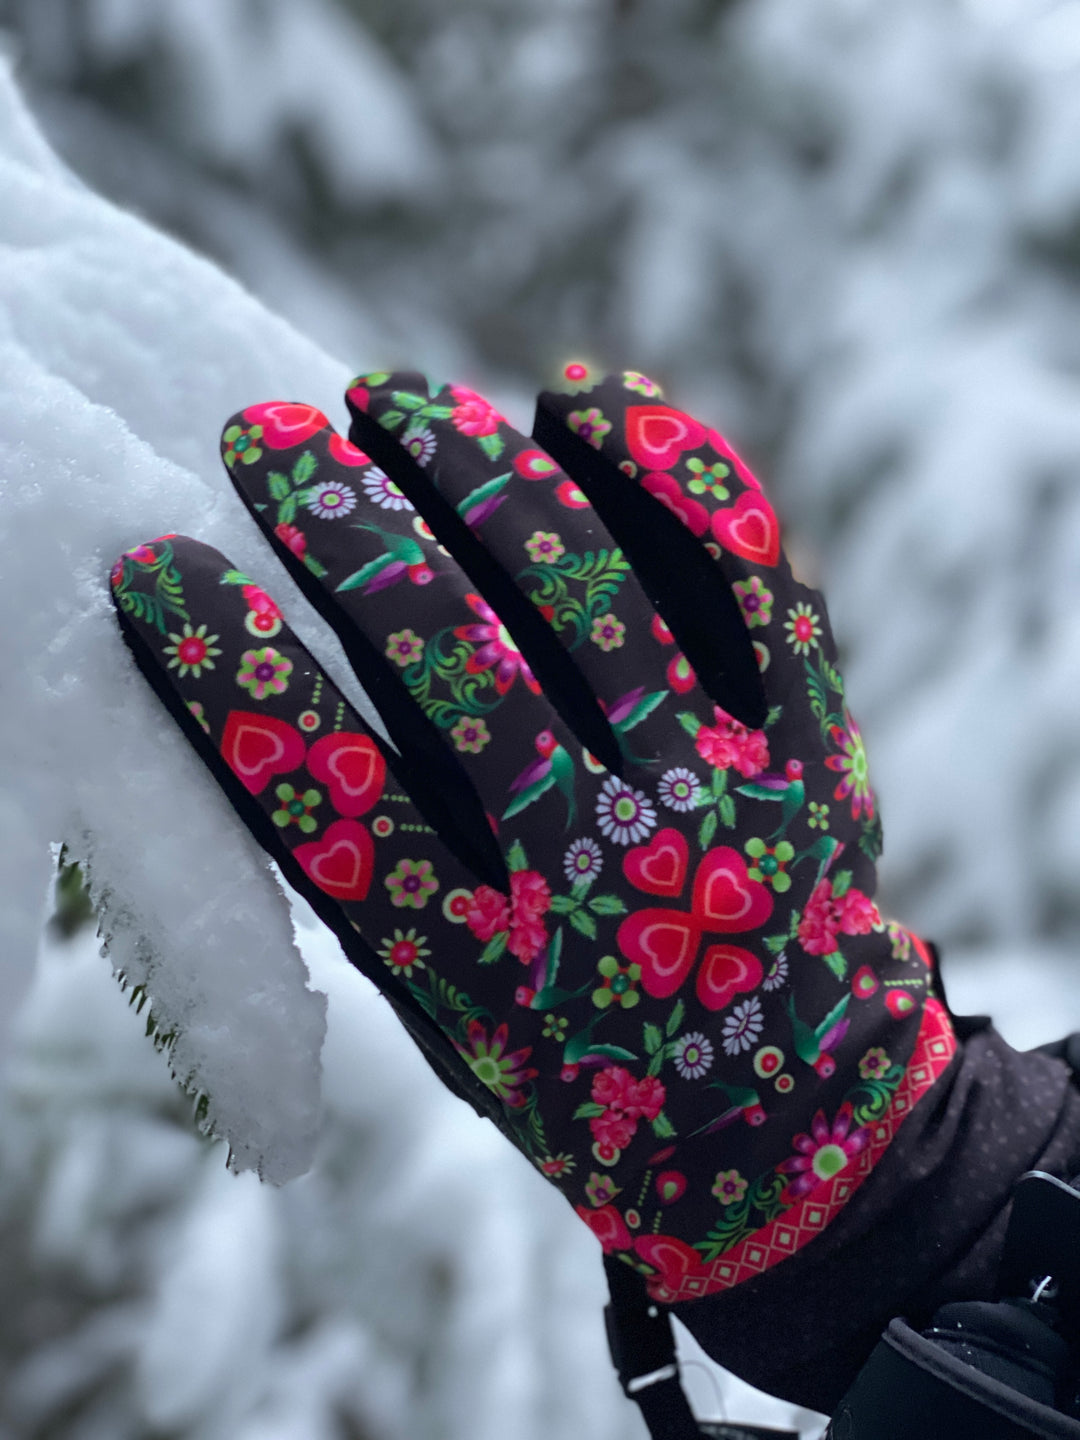 Winterzeit = Handschuhzeit